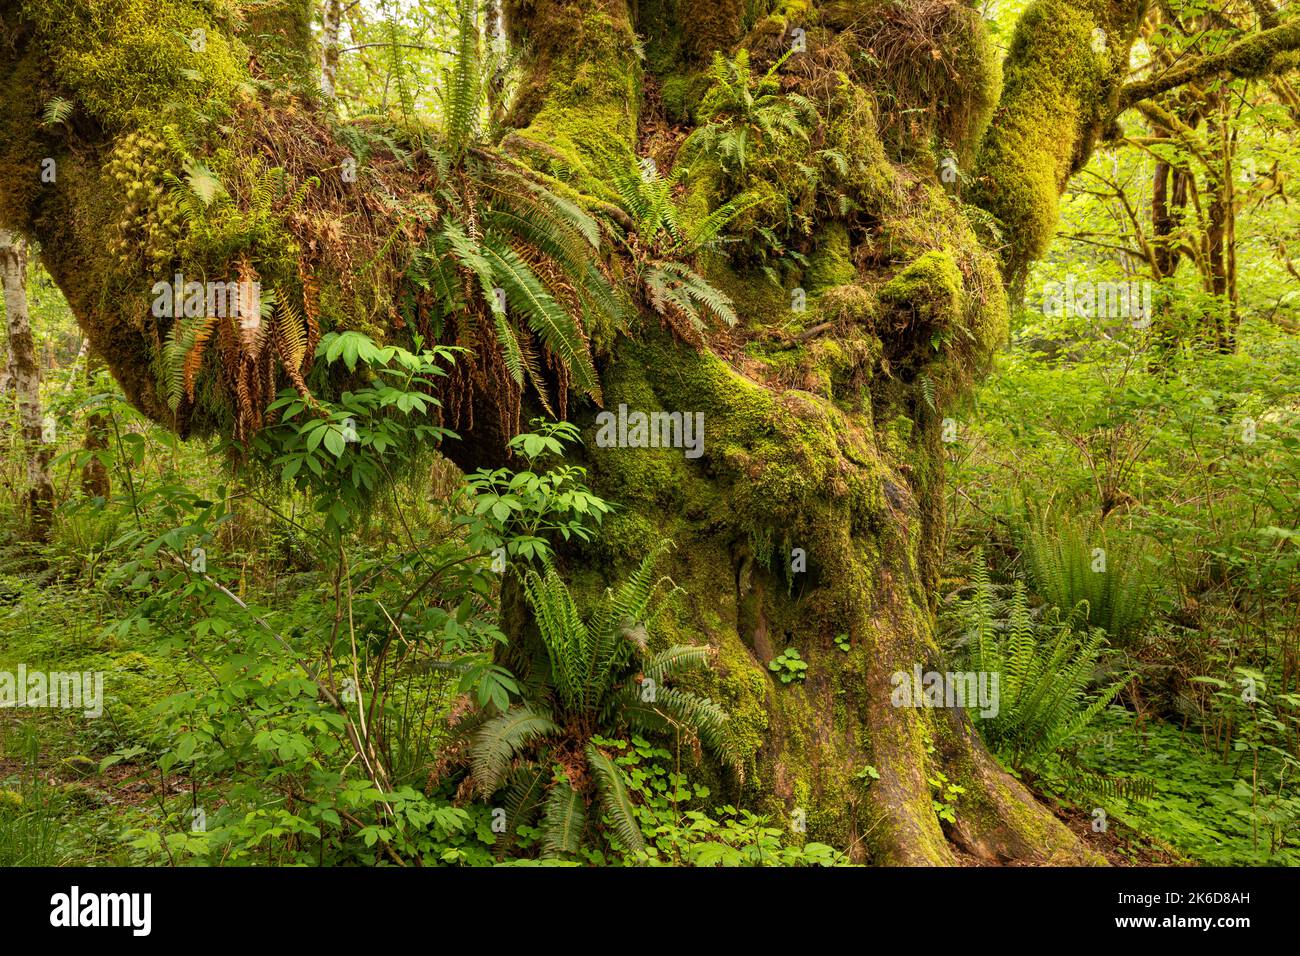 WA22244-00...WASHINGTON - albero dell'acero delle foglie grandi che serve come giardino per i vari tipi di muschio e felci nella foresta pluviale di Quinault di nazionale olimpica Foto Stock